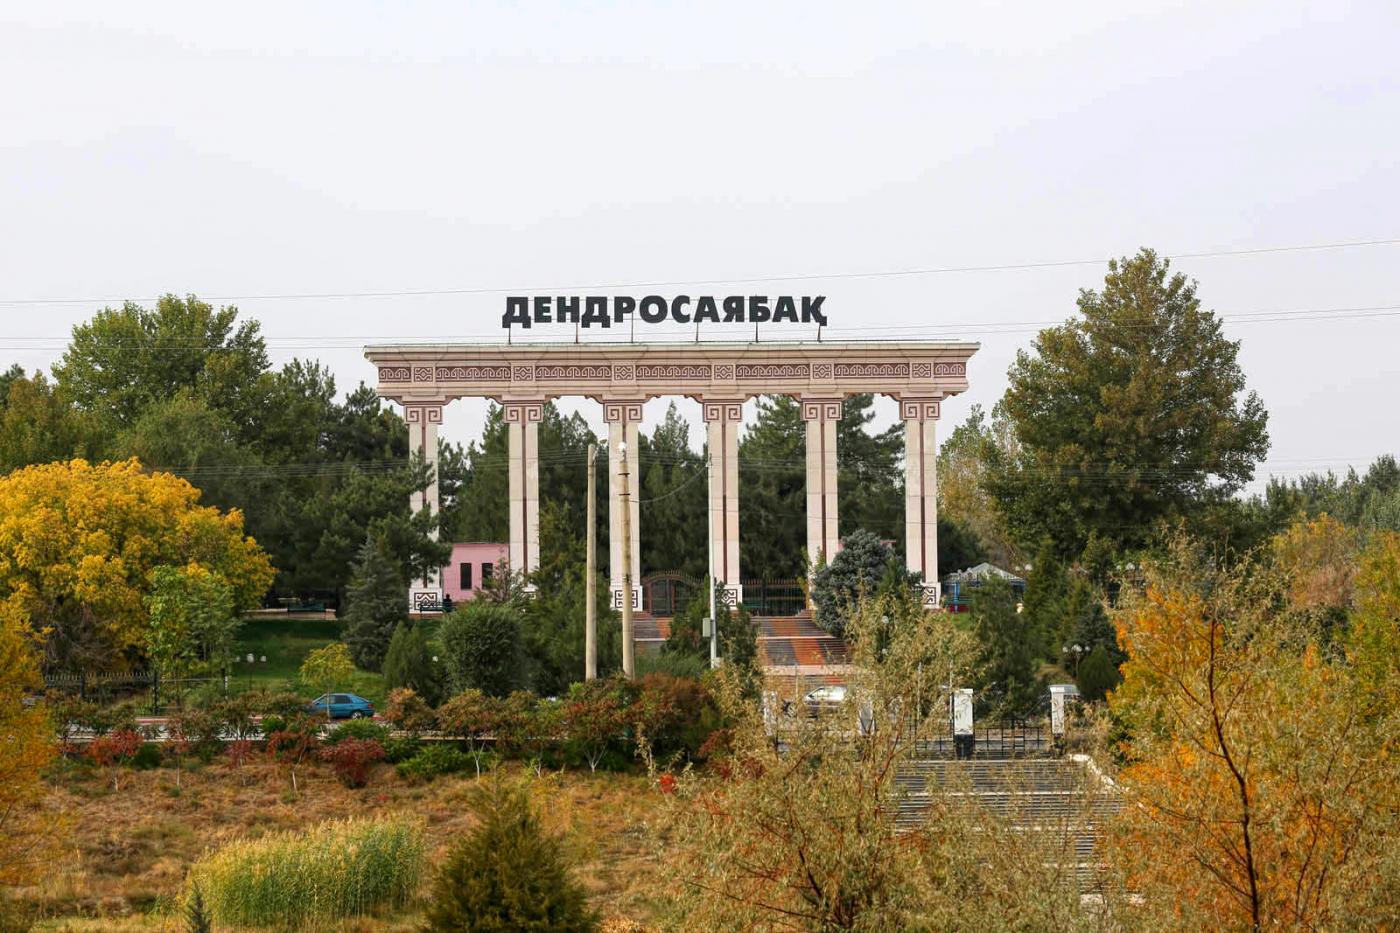 Дендропарк в Шымкенте